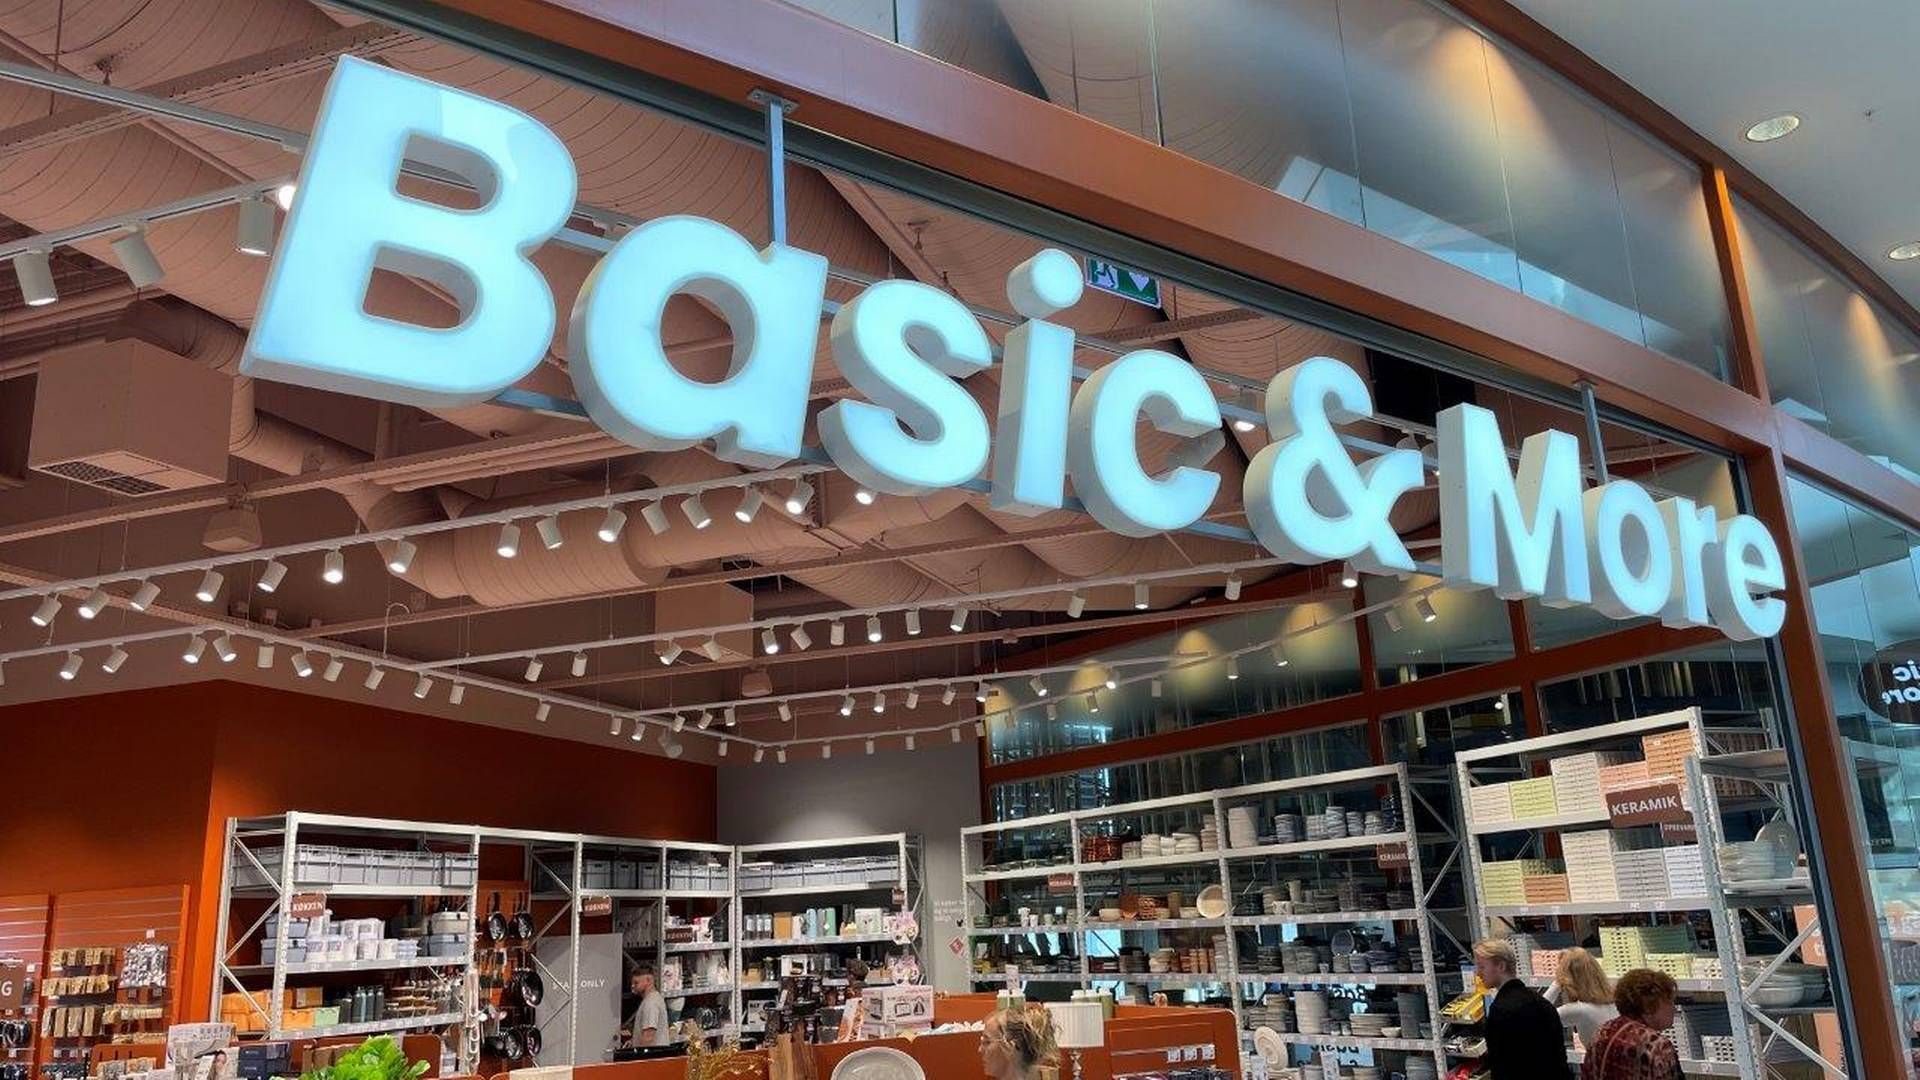 Butikskæden opkøber og sælger overskudsvarer og restpartier fra kendte danske og udenlandske varemærker inden for interiør, bolig og køkkenudstyr. | Foto: Basic & More/pr